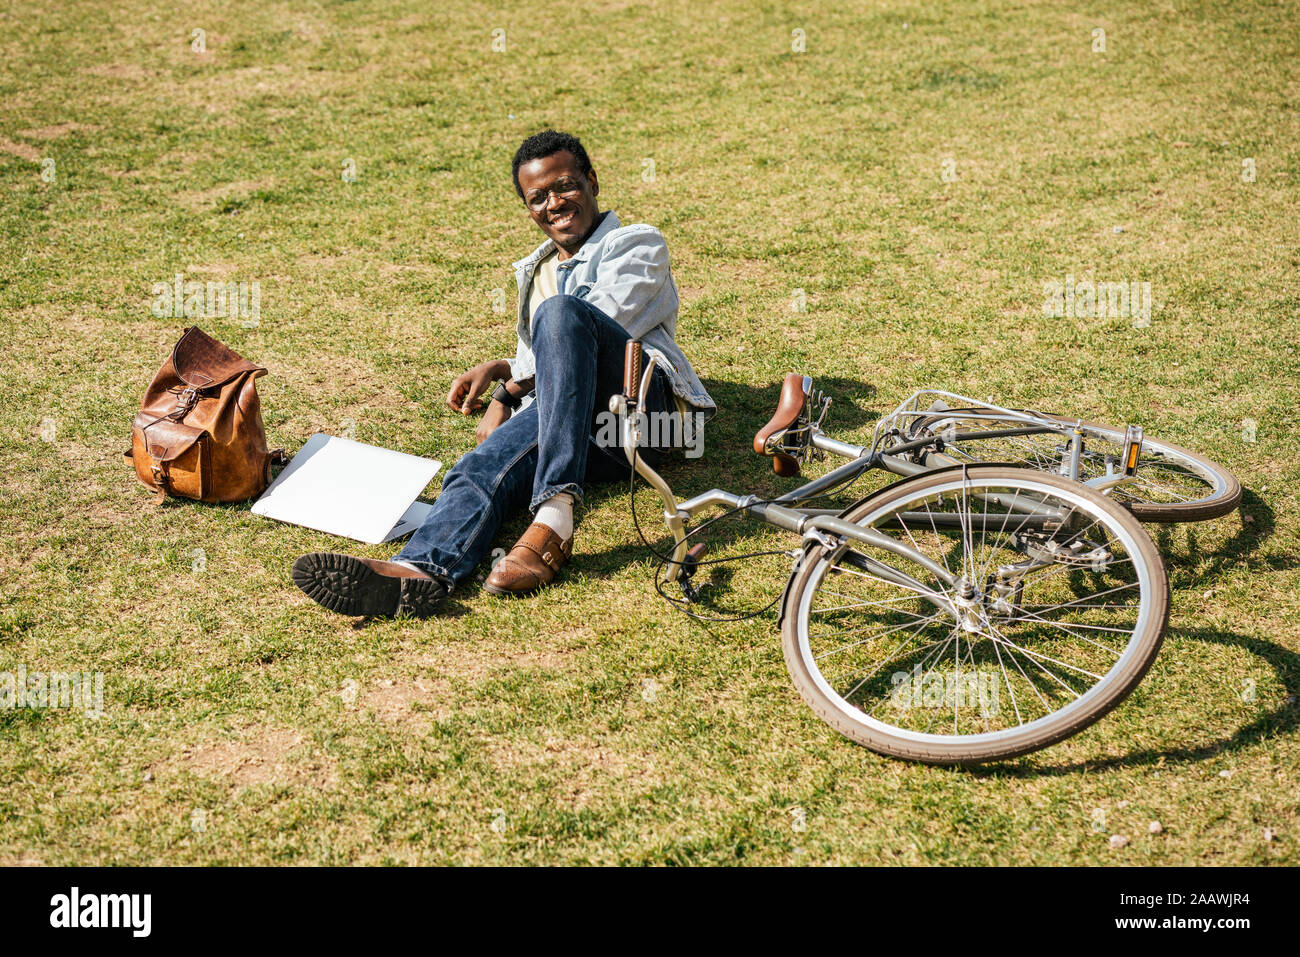 Jeune homme avec alptop et location, lying on grass Banque D'Images